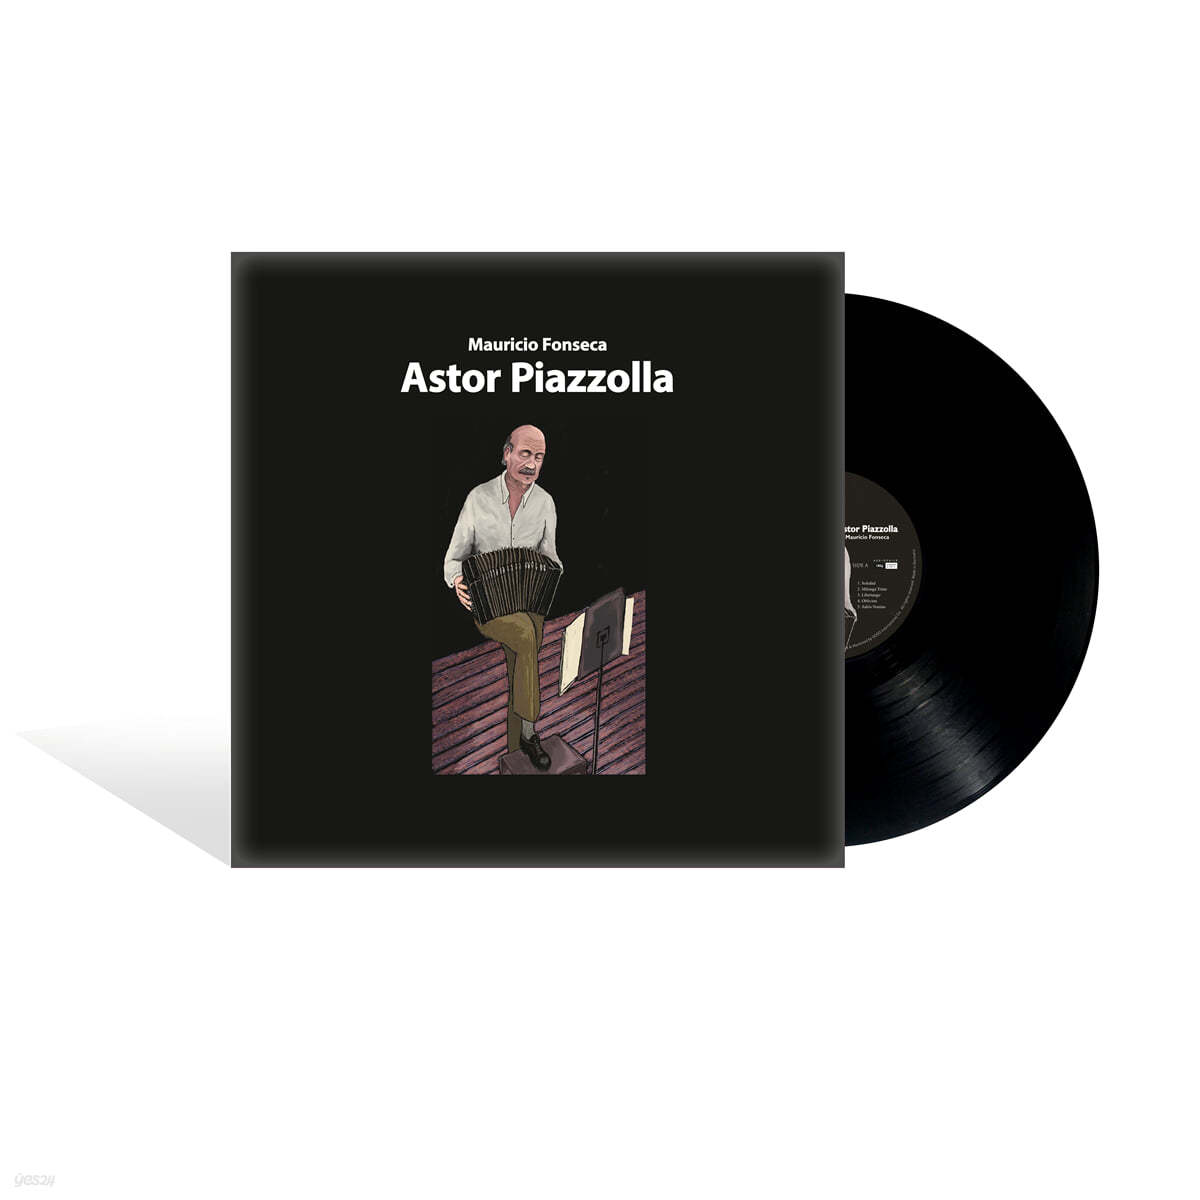 일러스트로 만나는 아스토르 피아졸라 (Astor Piazzolla Illustrated by Mauricio Fonseca) [LP] 